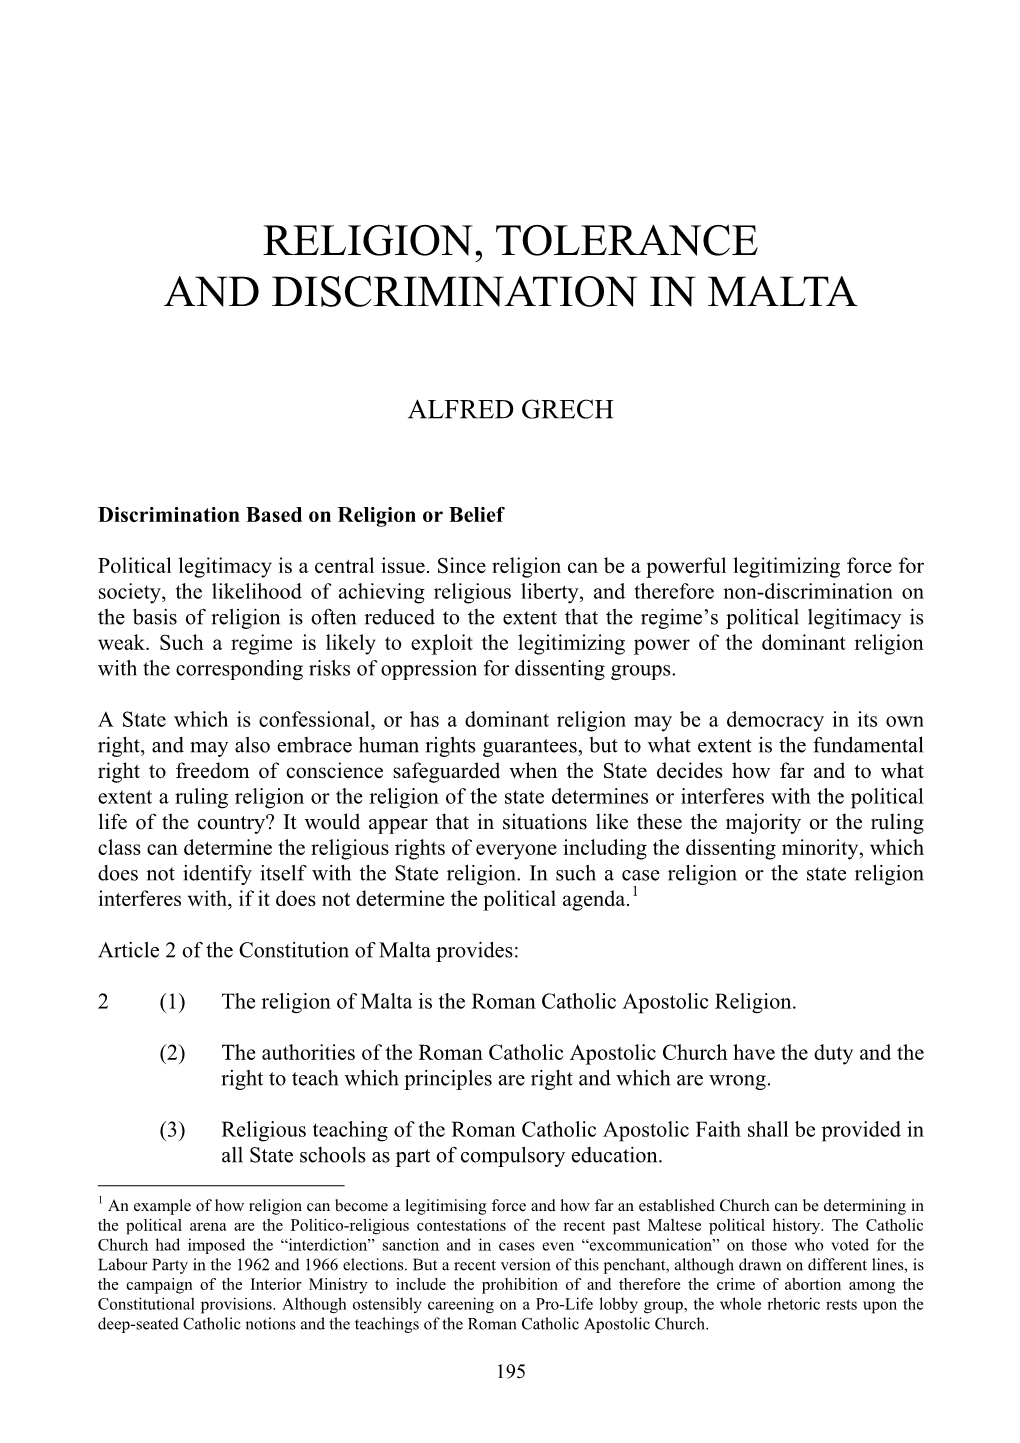 Religion, Tolerance and Discrimination in Malta